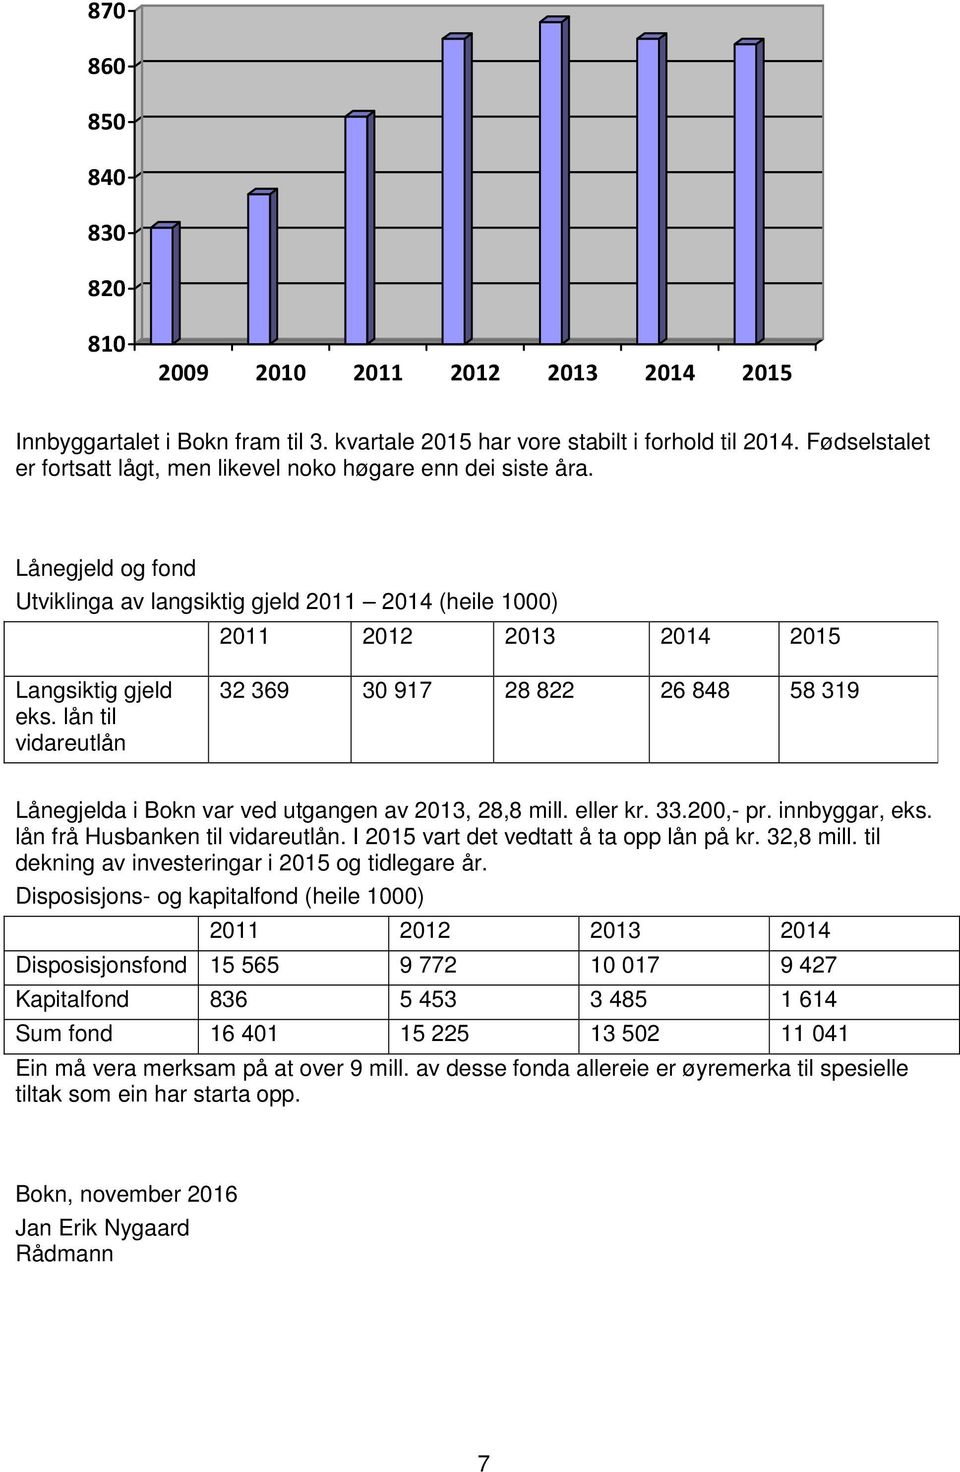 lån til vidareutlån 32 369 30 917 28 822 26 848 58 319 Lånegjelda i Bokn var ved utgangen av 2013, 28,8 mill. eller kr. 33.200,- pr. innbyggar, eks. lån frå Husbanken til vidareutlån.